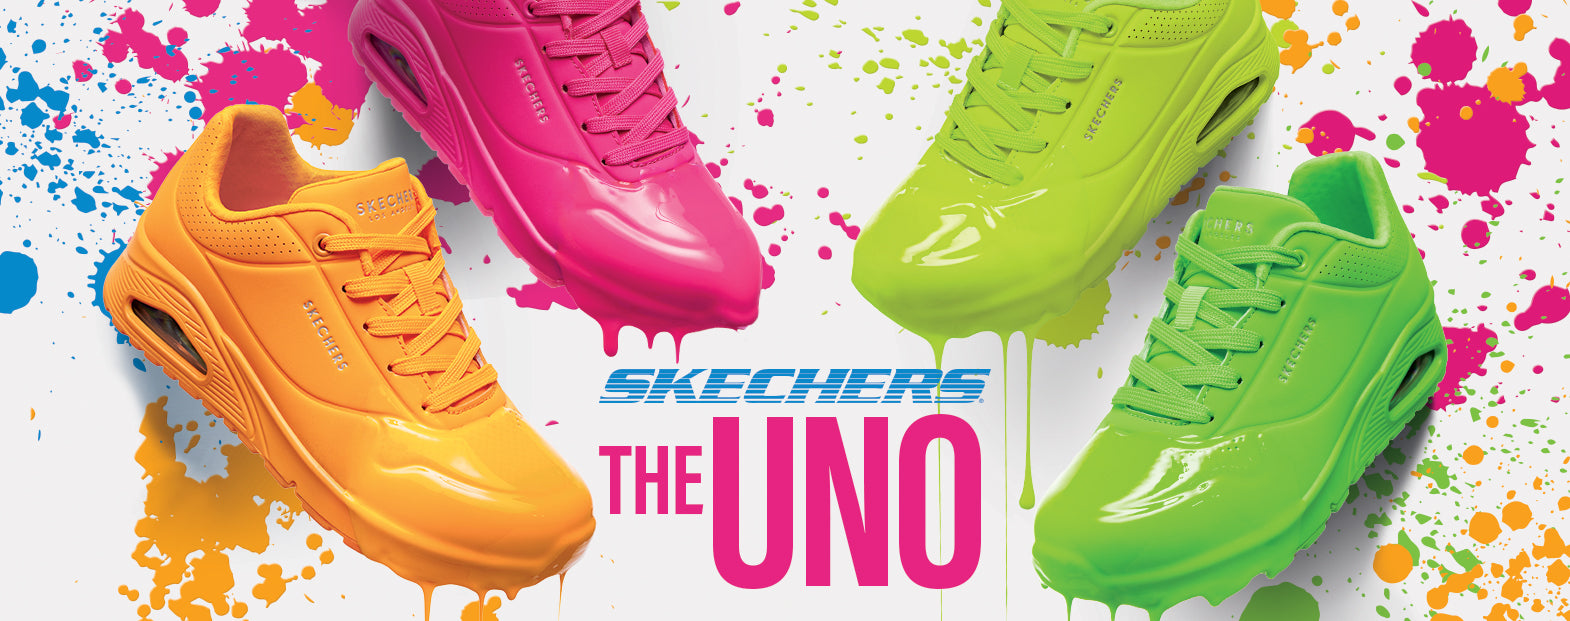 Udvikle Stort univers spids Uno: Vores farverige sneakers til hele familien – Skechers.dk